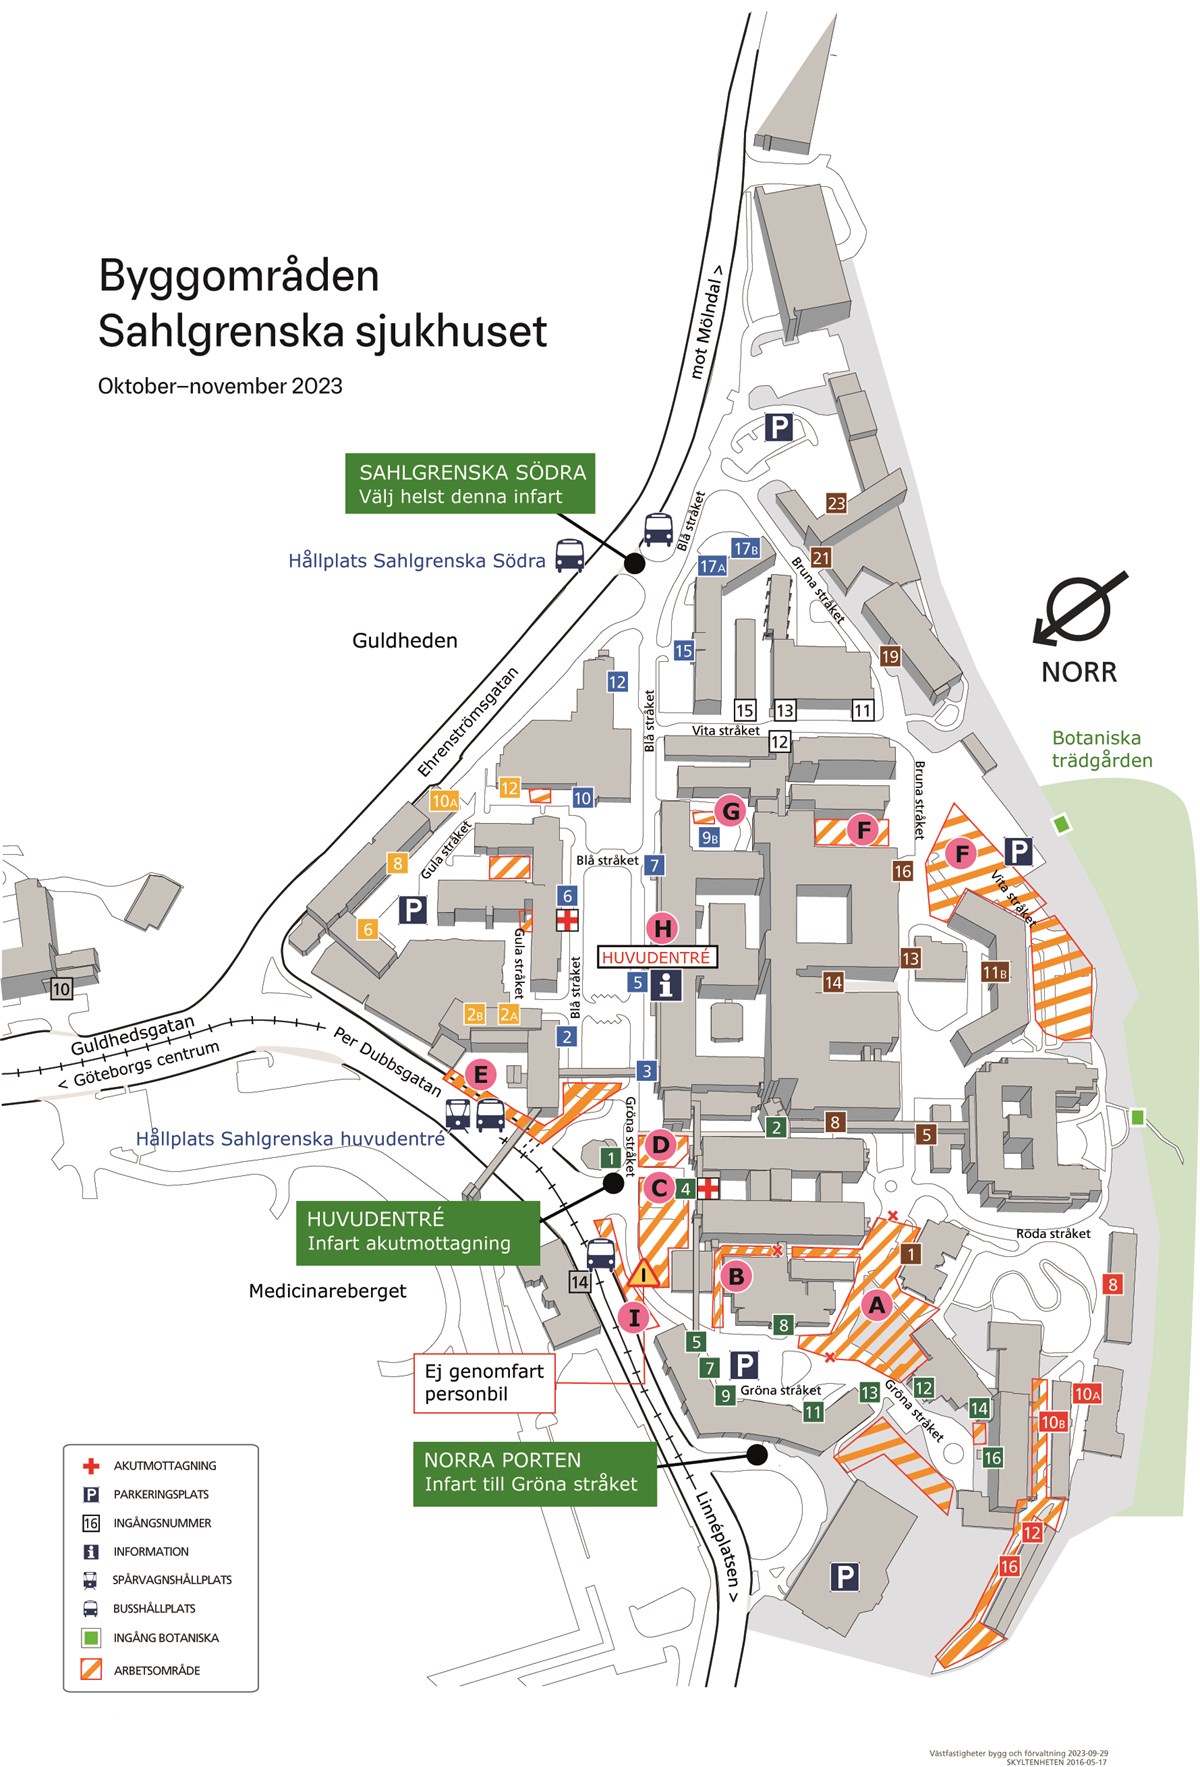 karta över byggområden sahlgrenska sjukhuset.